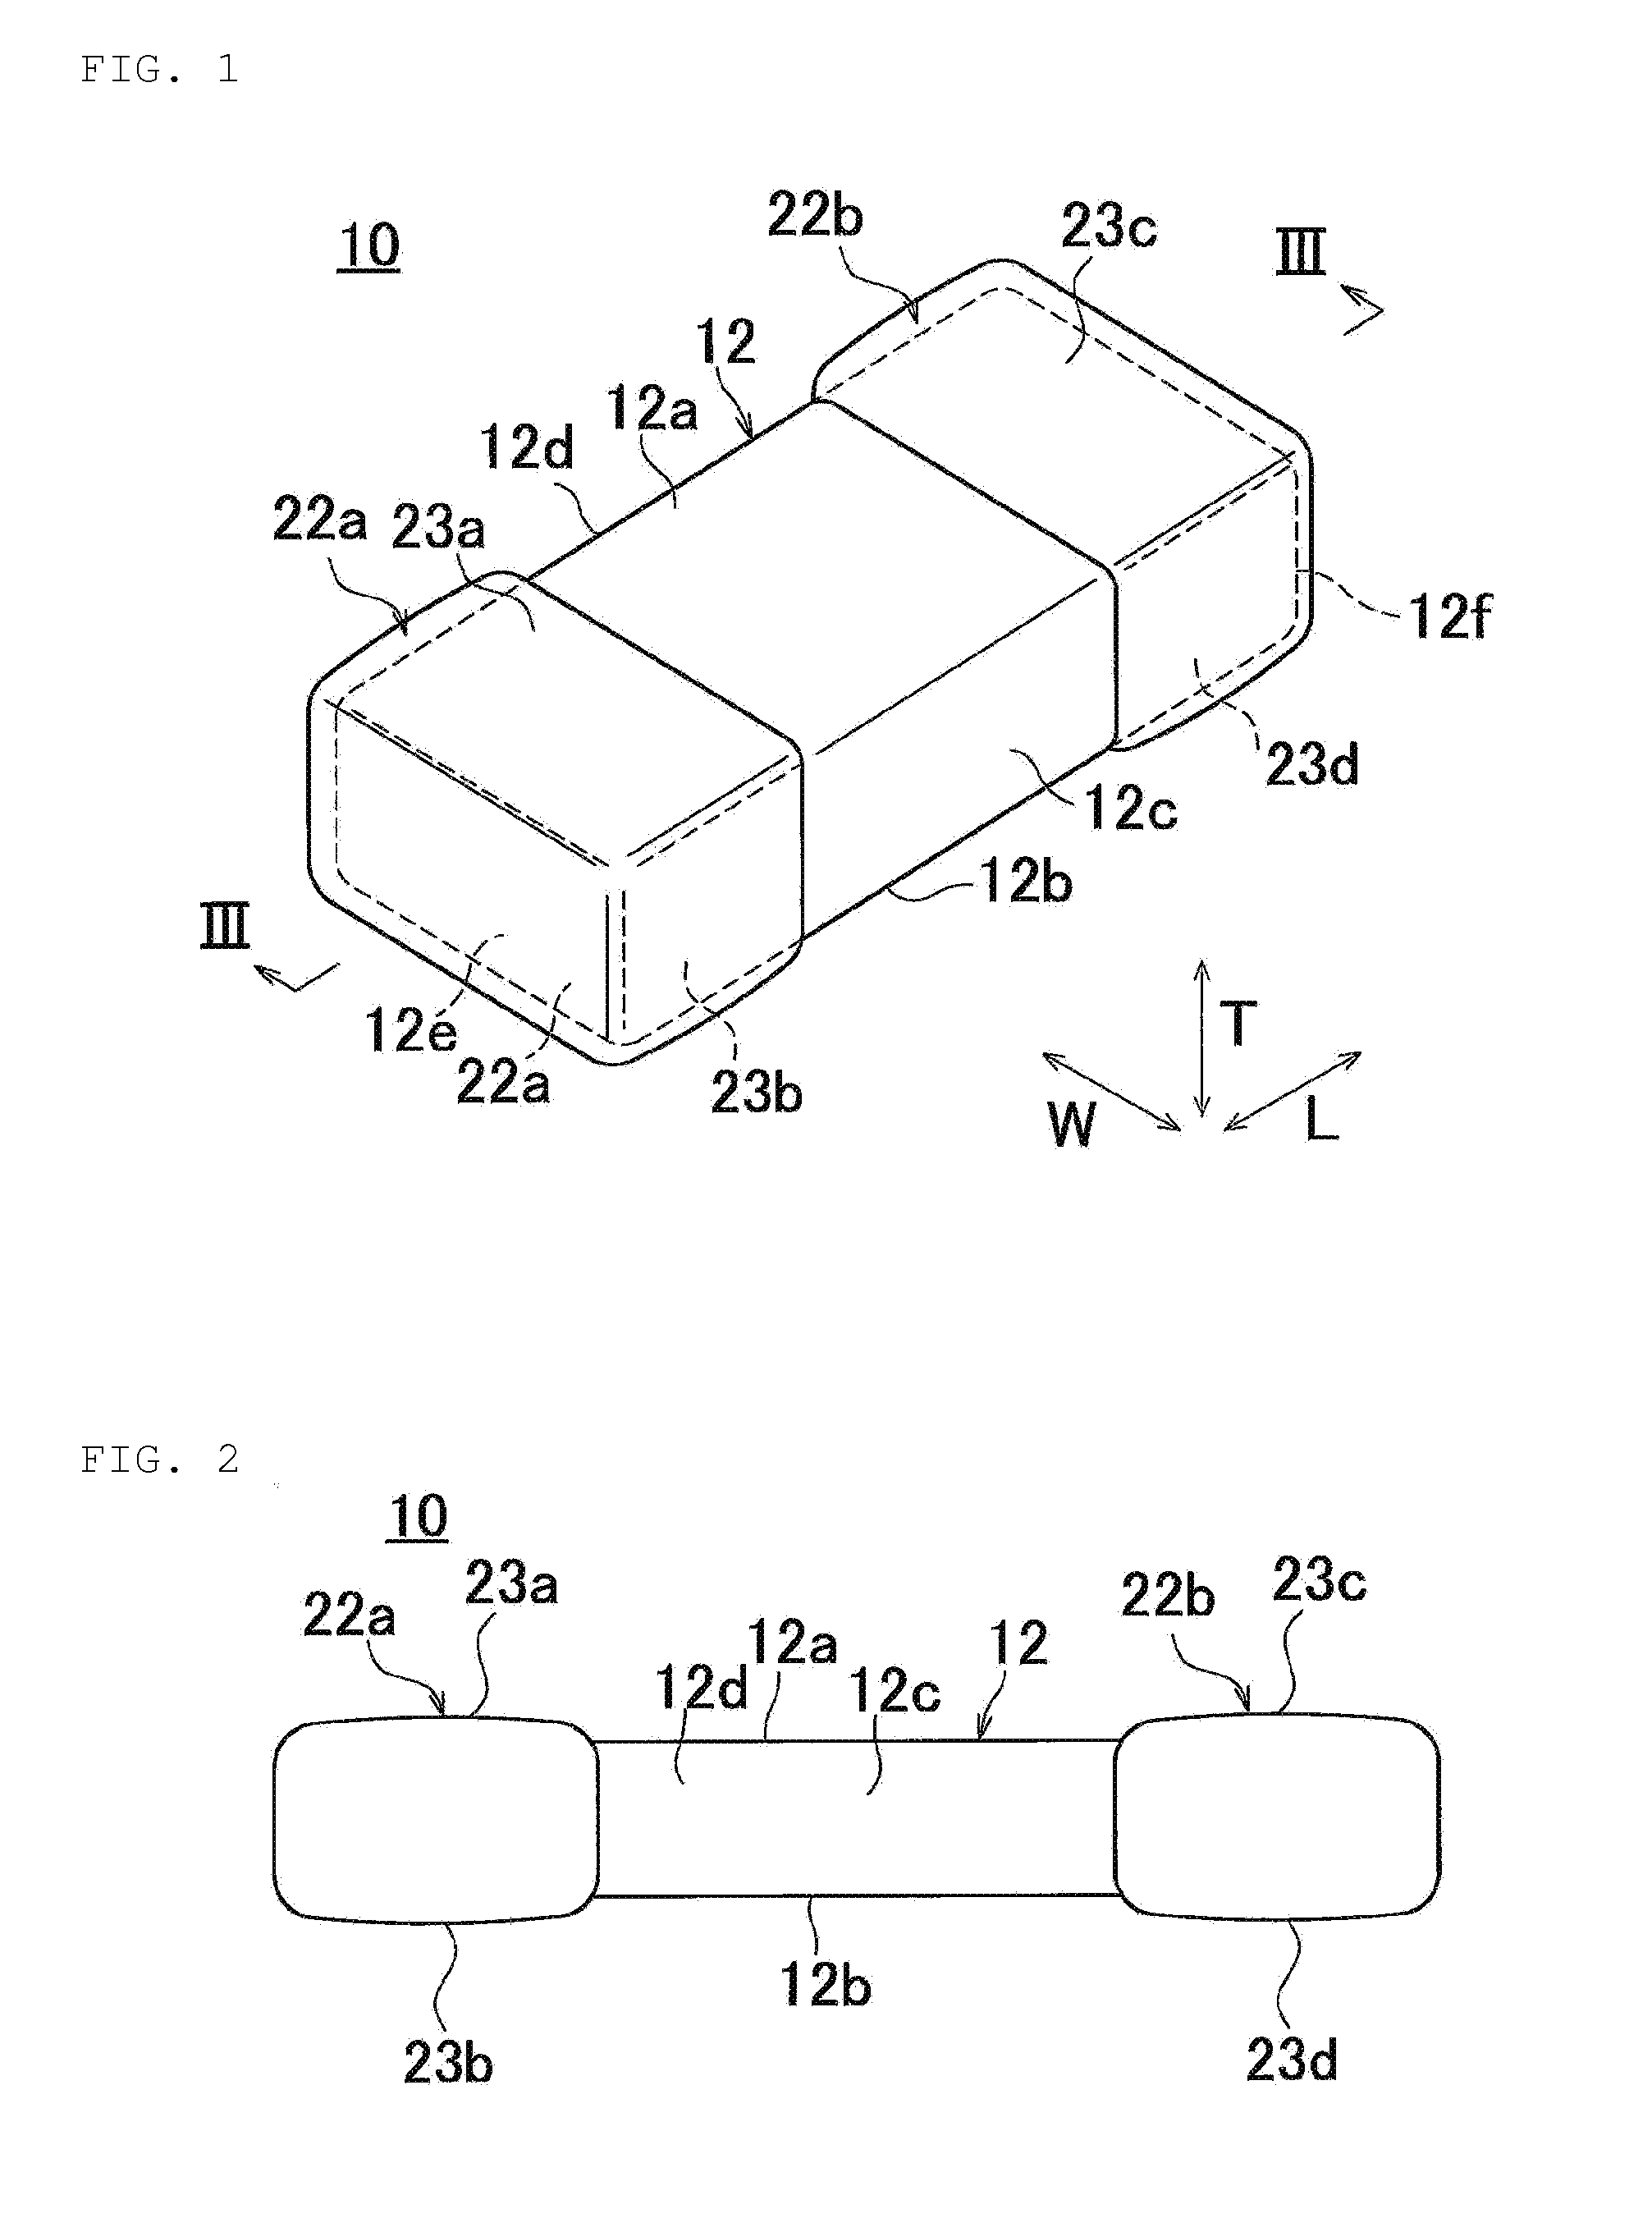 Multilayer ceramic capacitor